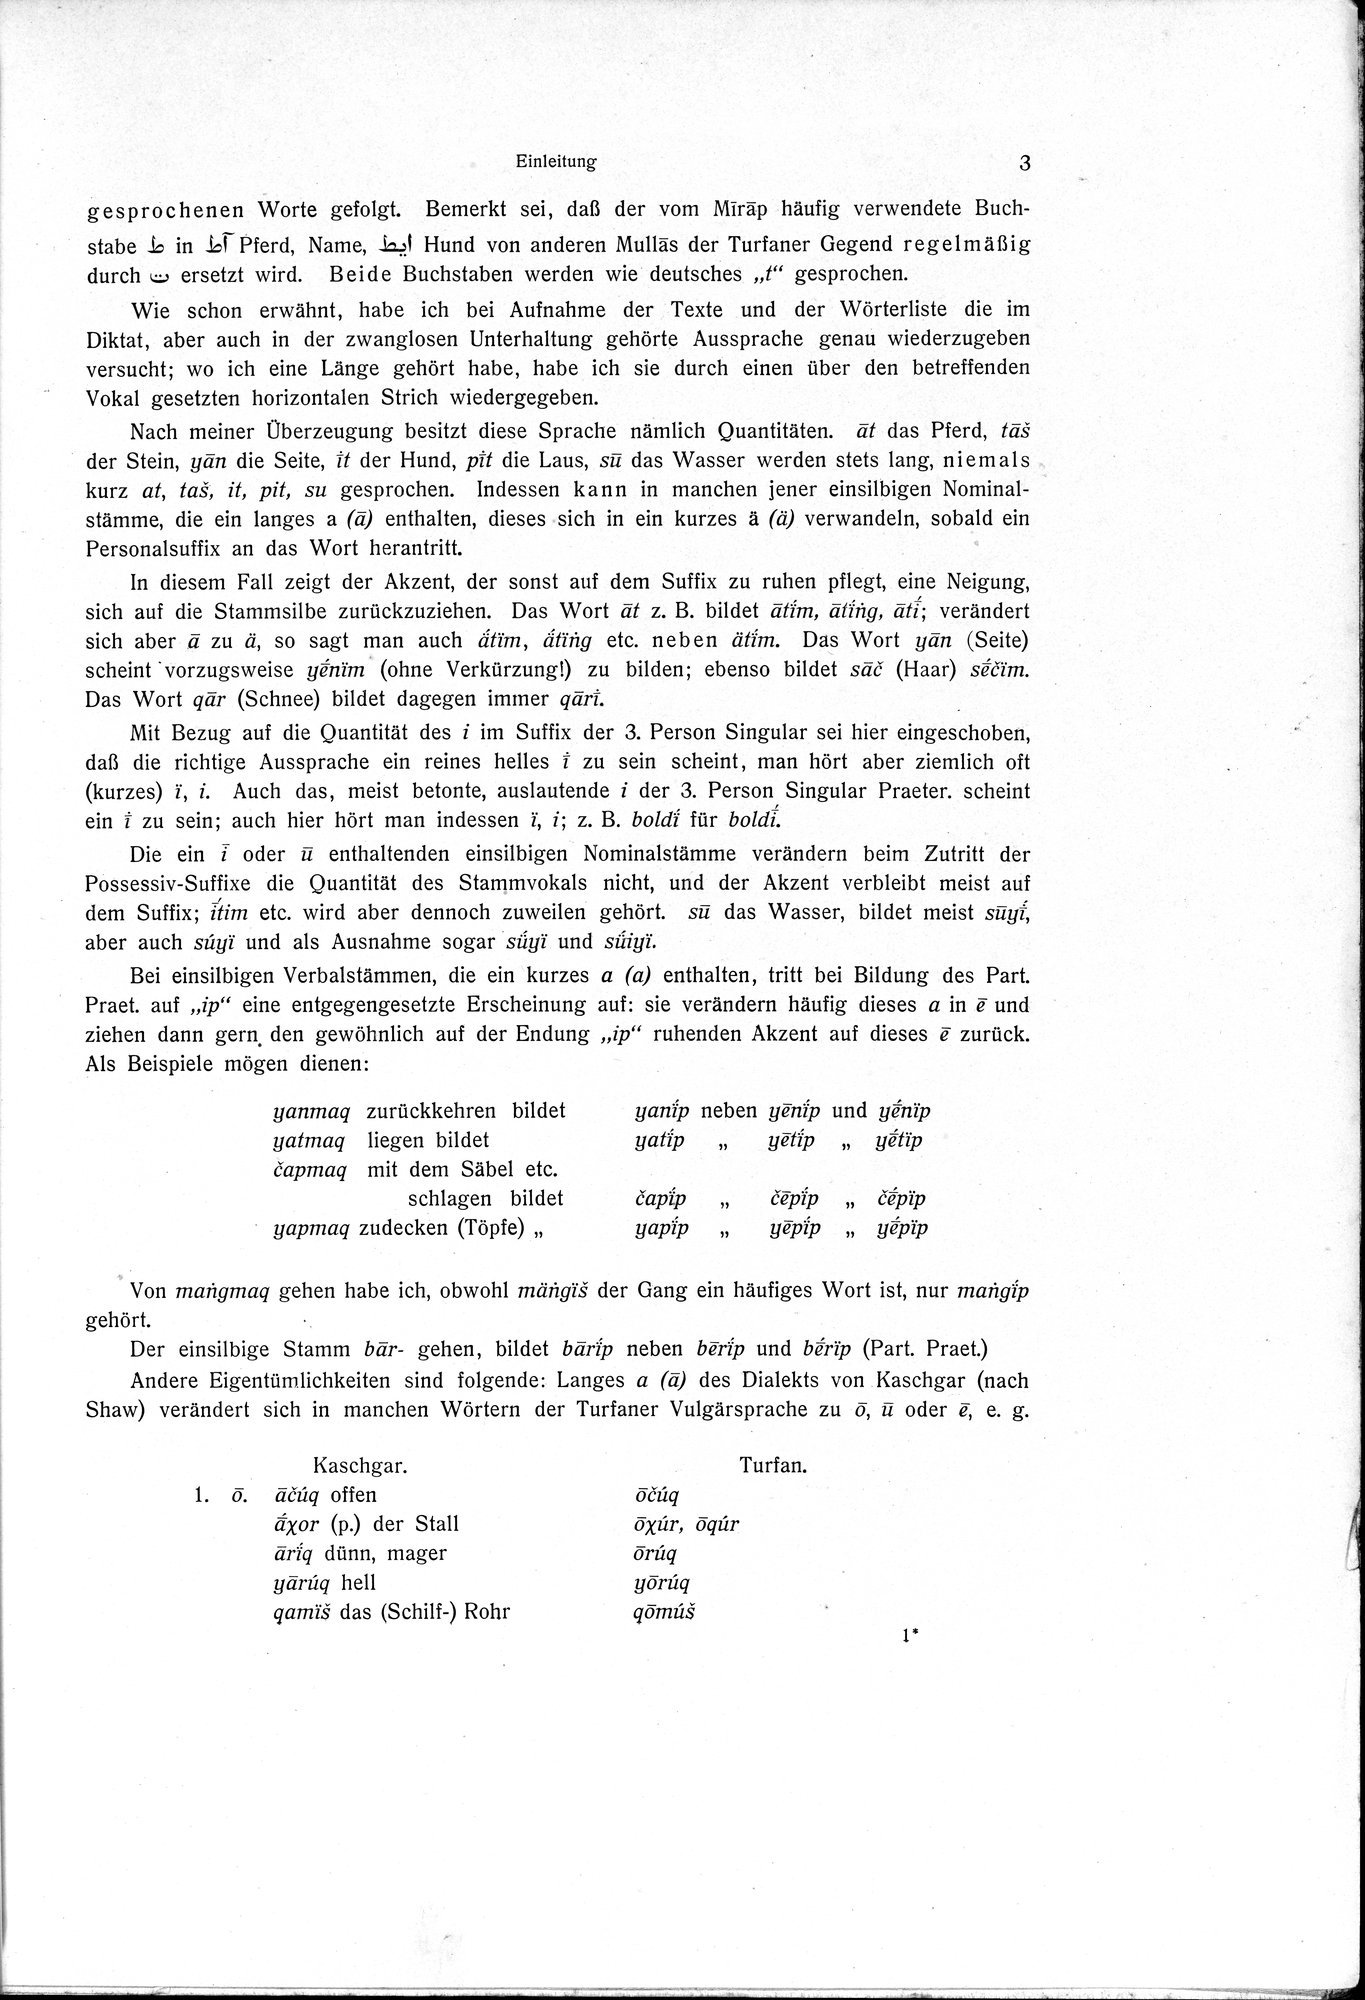 Sprichwörter und Lieder aus der Gegend von Turfan : vol.1 / Page 15 (Grayscale High Resolution Image)